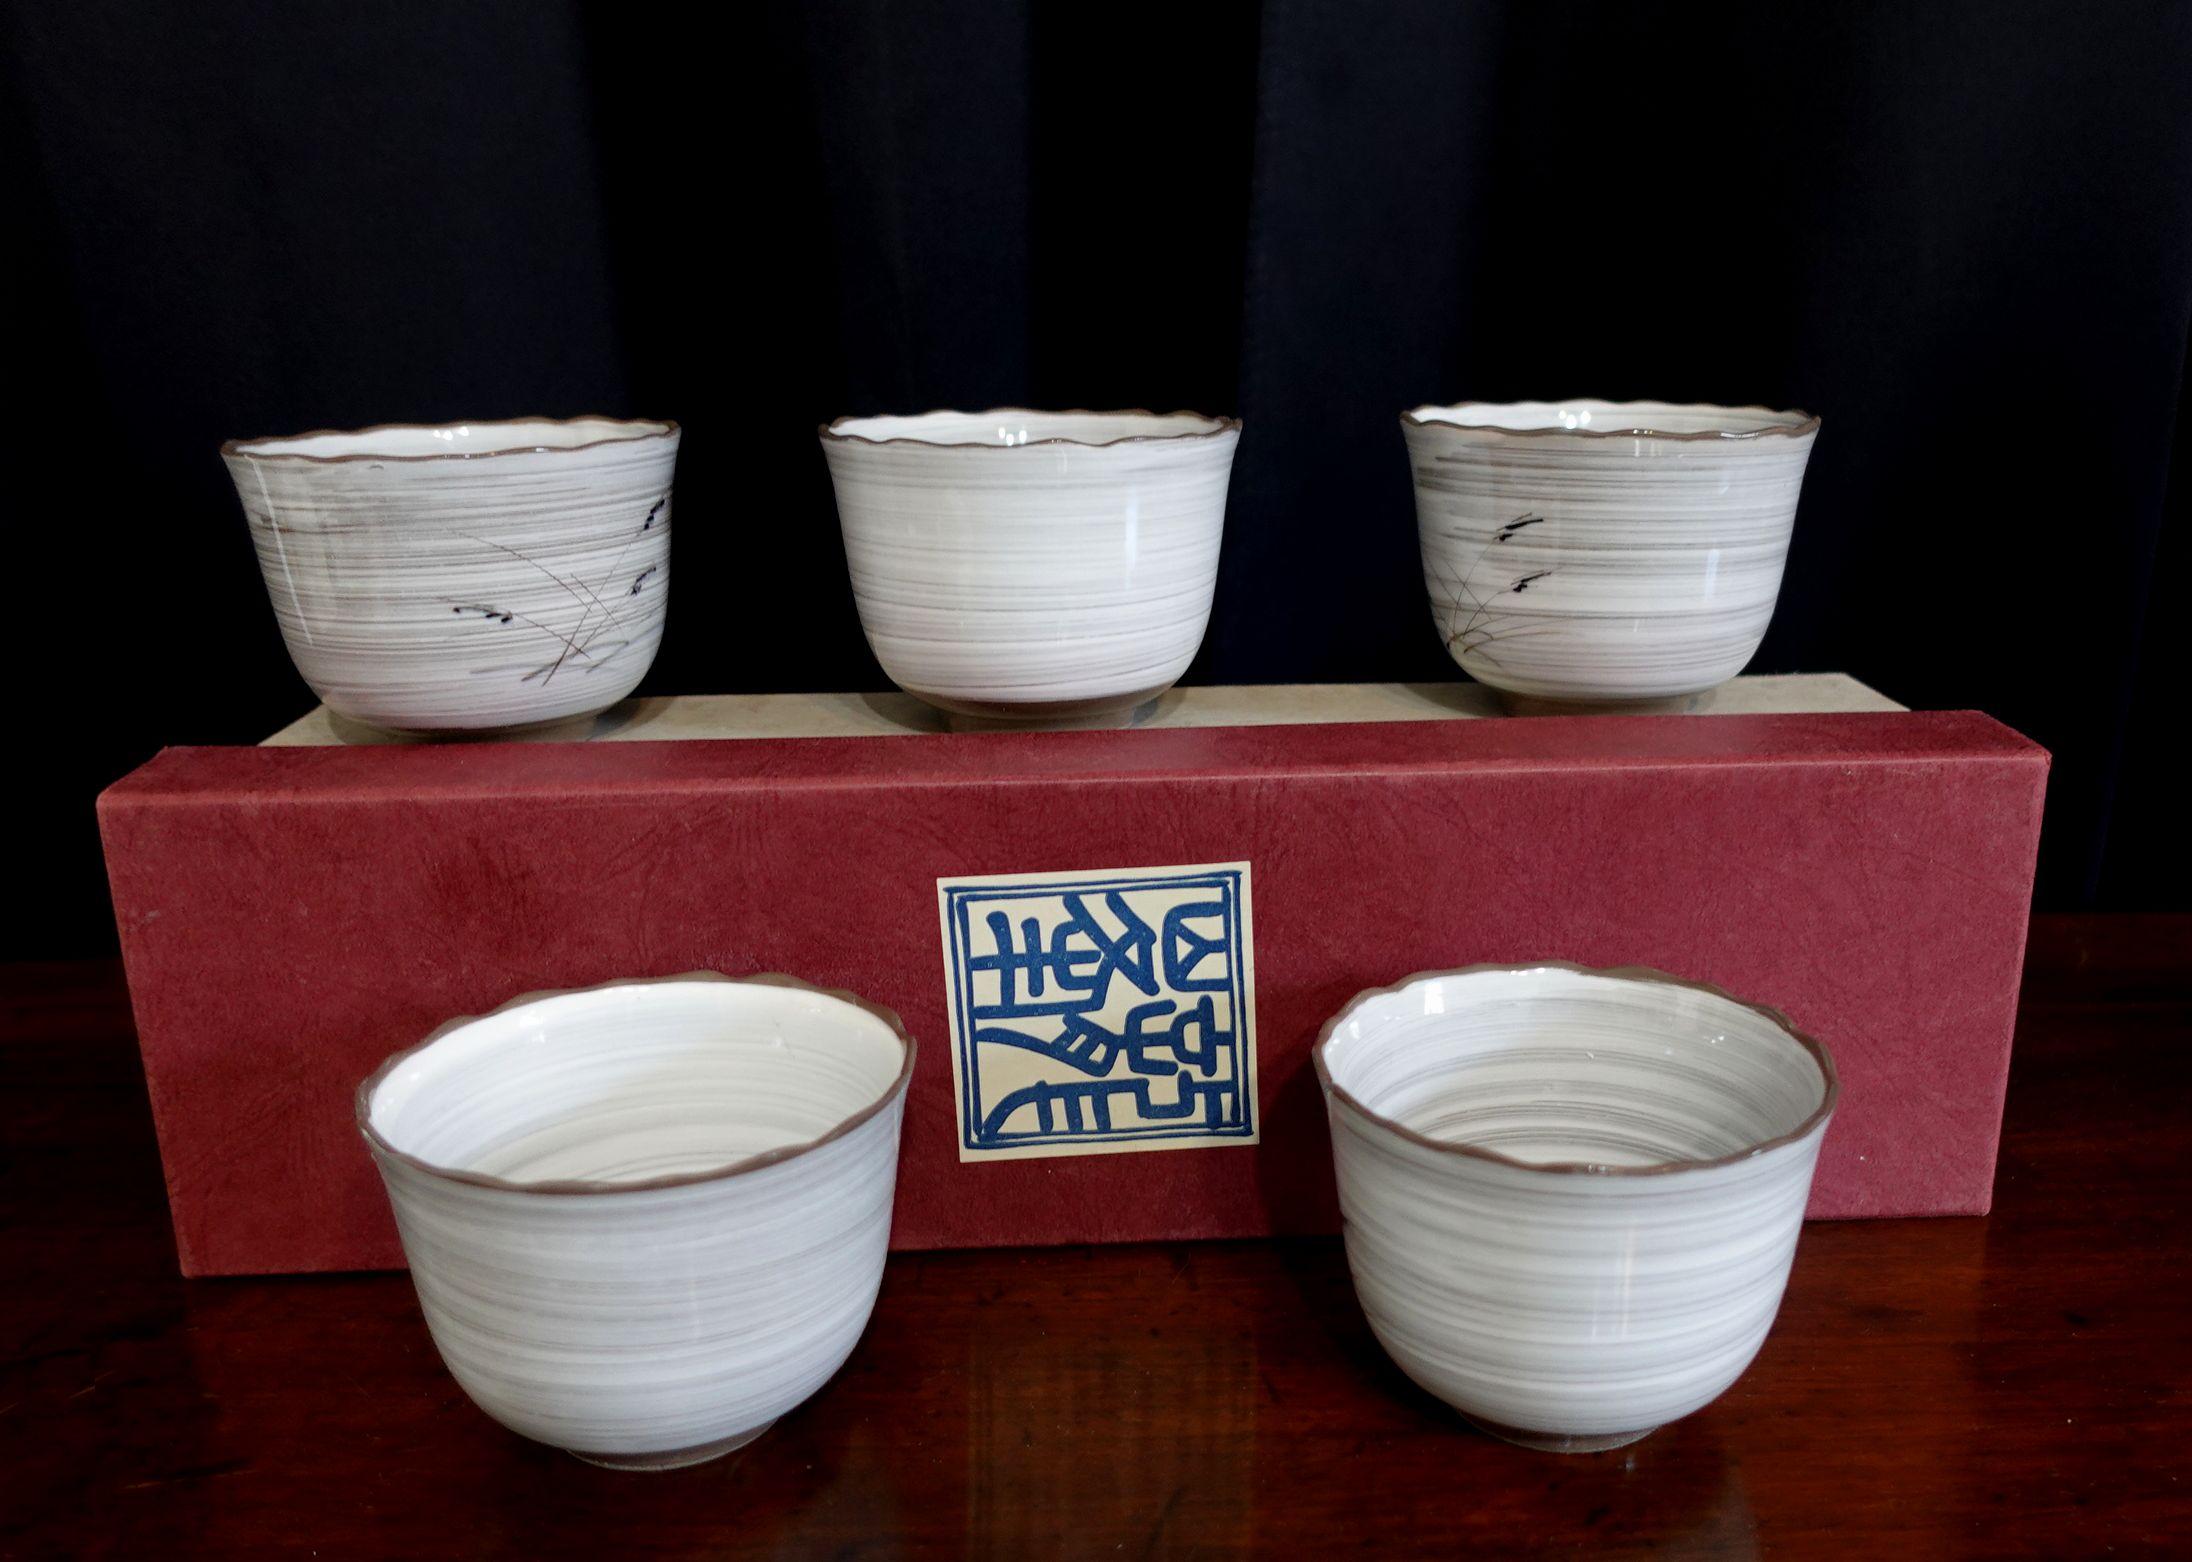 Alt - Satz von 5 japanischen Teetassen mit handgemalten Bildern, unten signiert.
Inklusive Originalverpackung

In gutem originalem Neuzustand und gerade im Lager gefunden, noch nie benutzt.